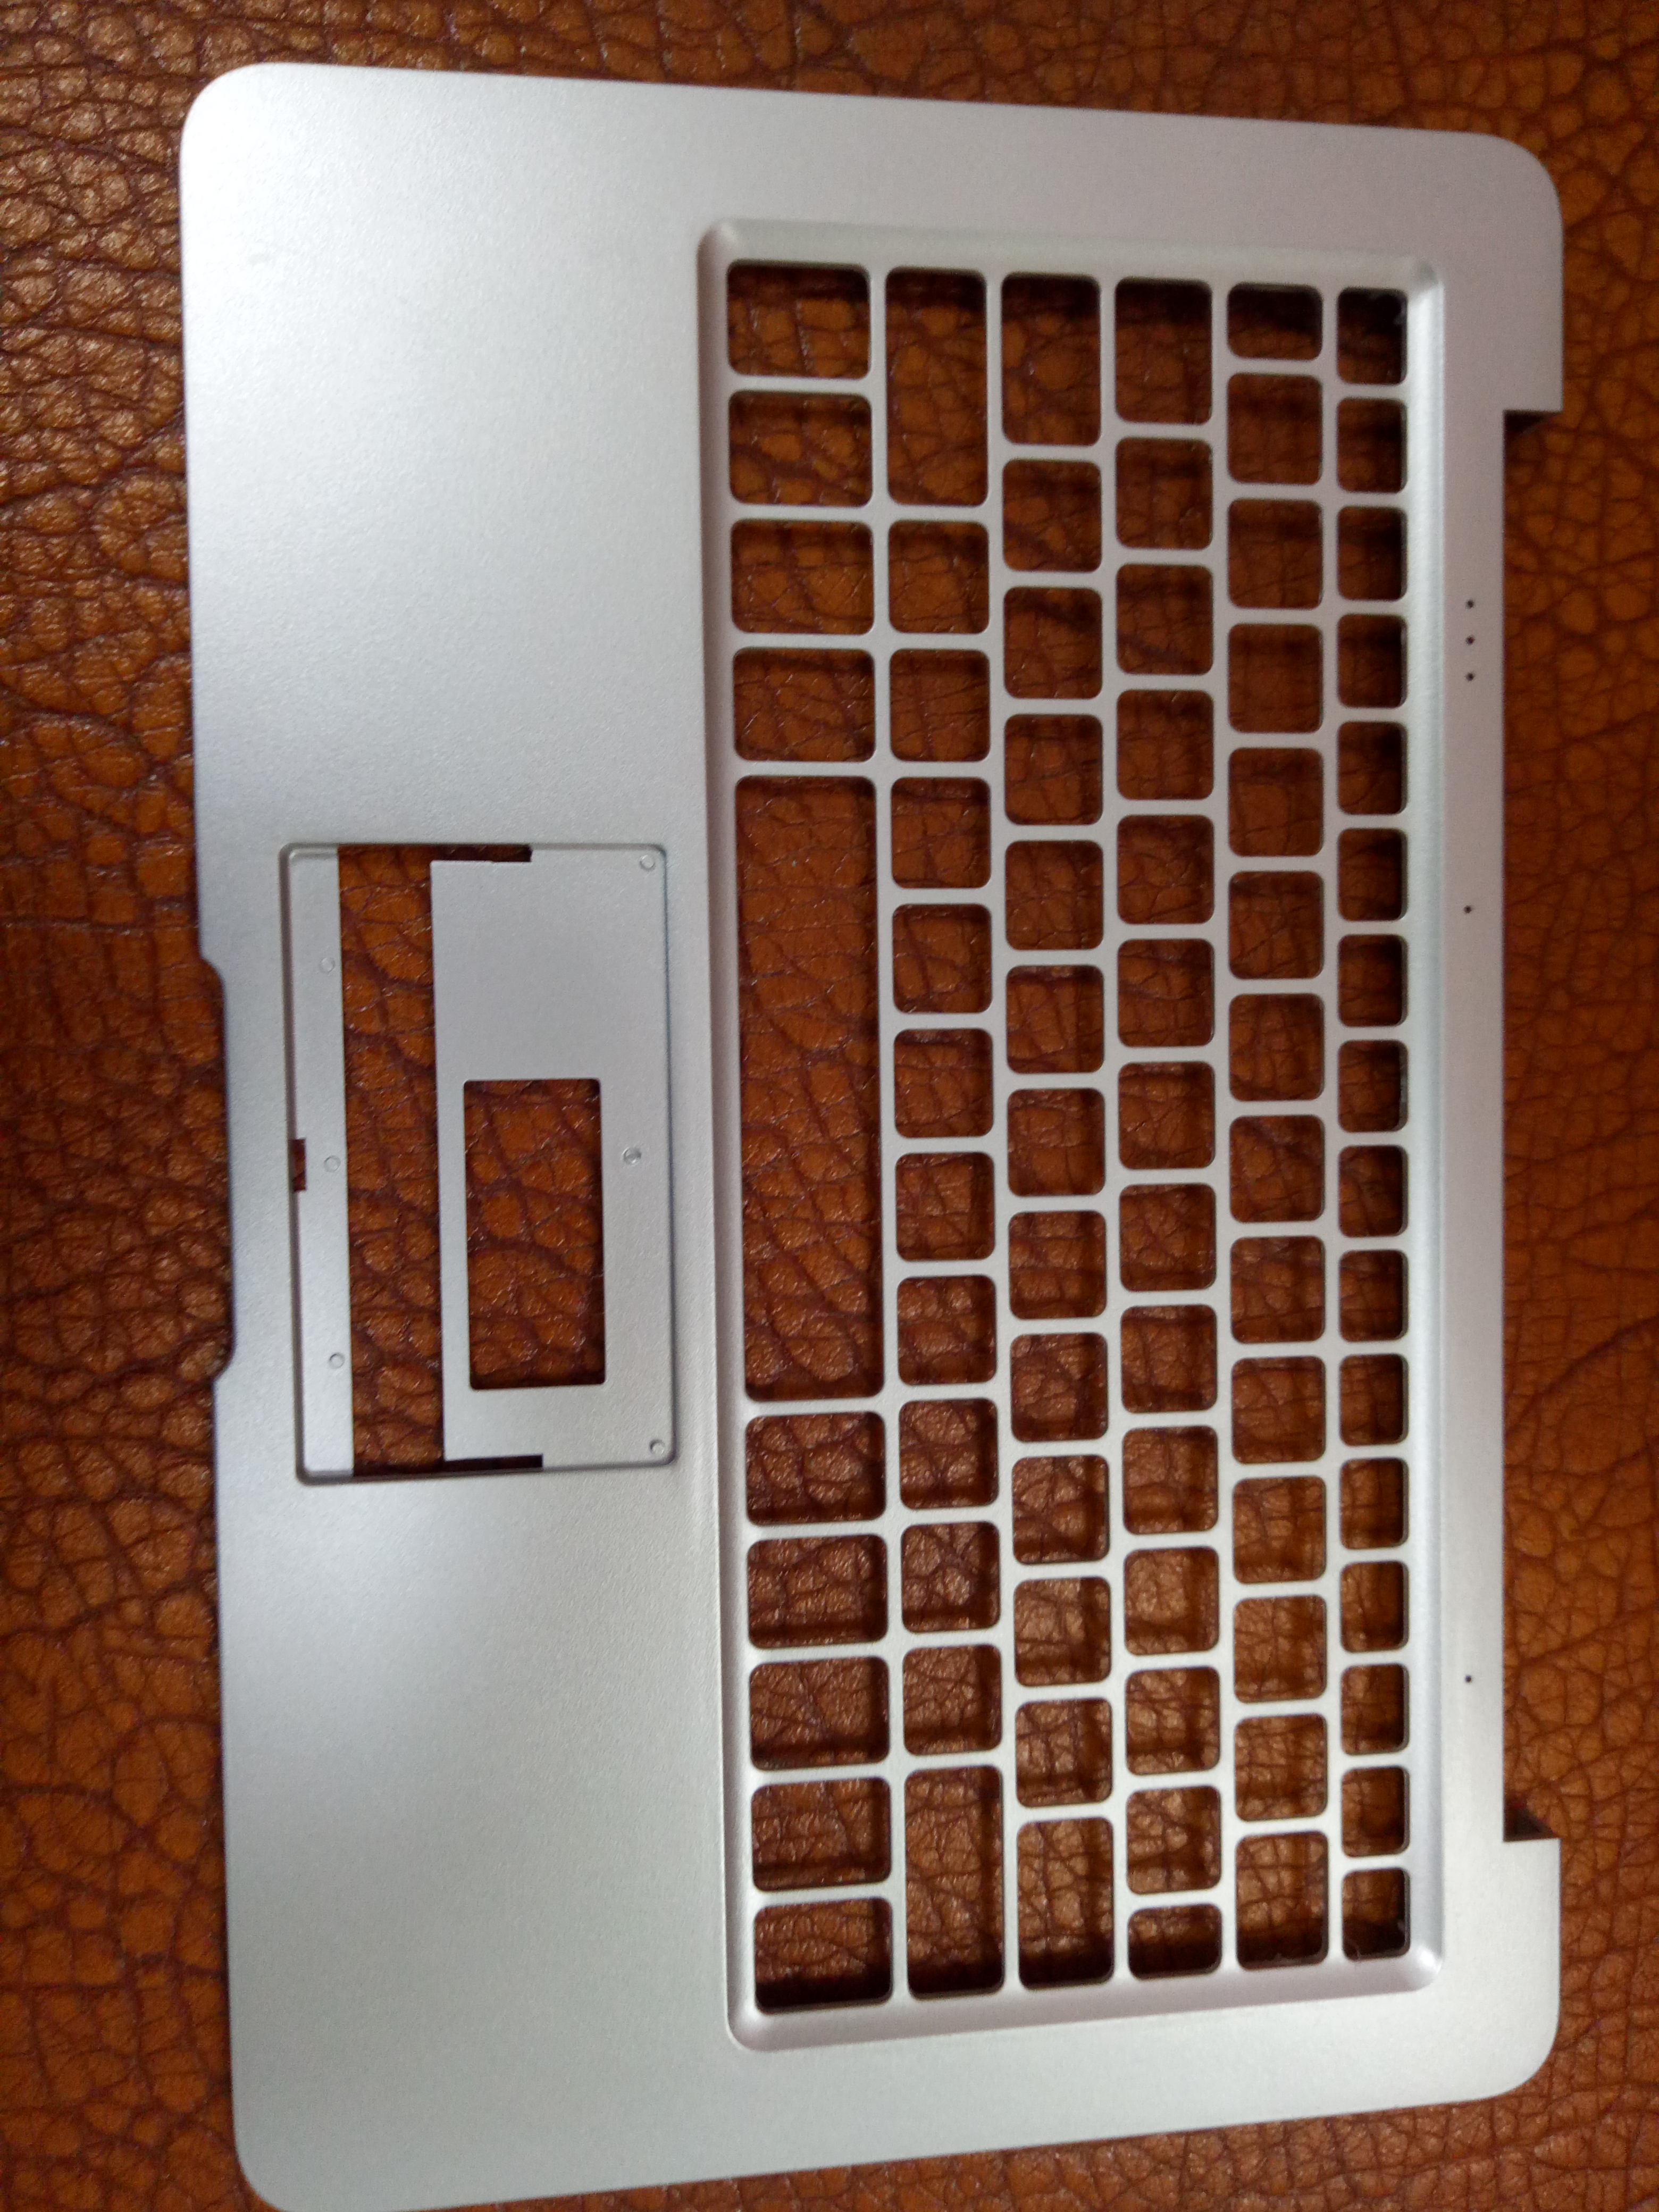 键盘银色 键盘银色供应商 键盘银色厂家 键盘银色报价 键盘银色深圳供应商